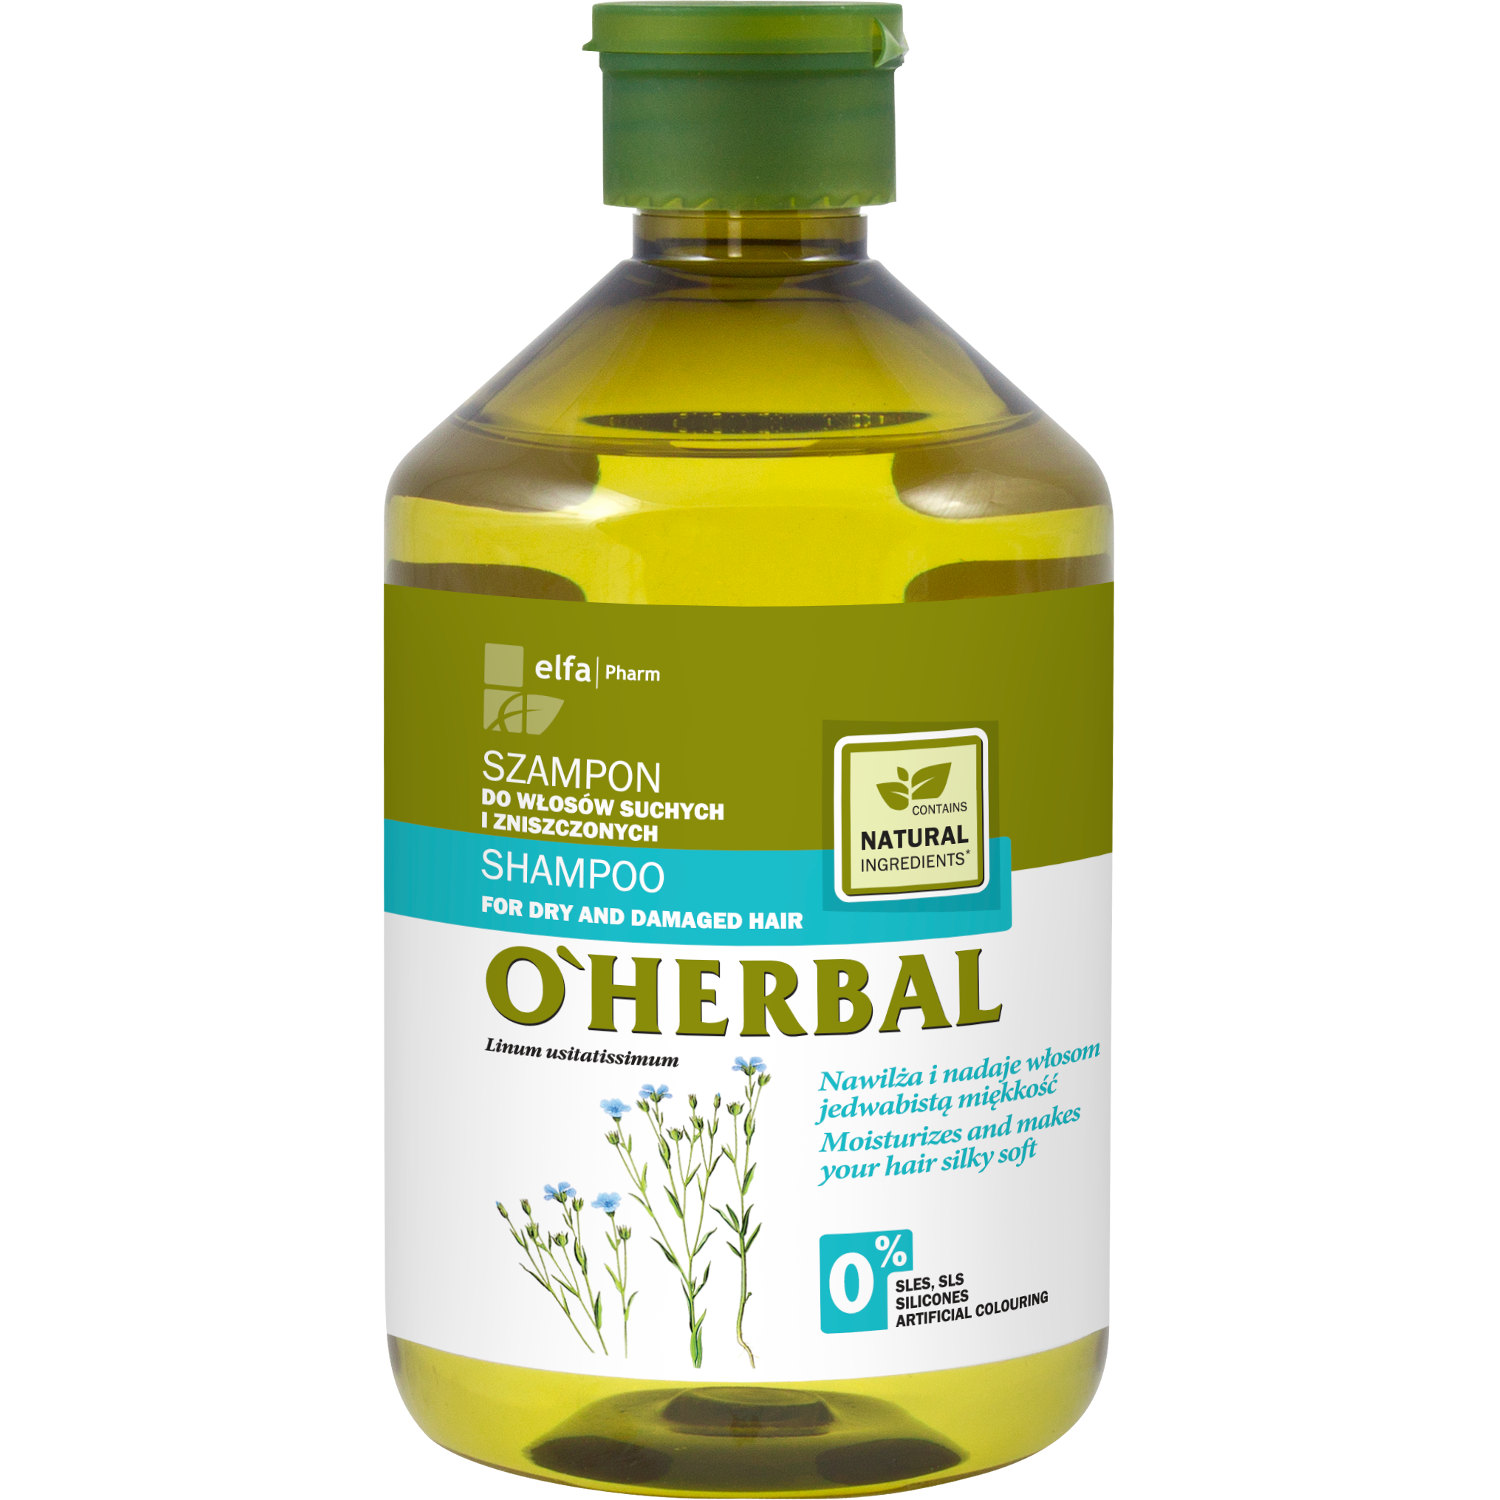 odżywka do włosów argan oil bioelixire